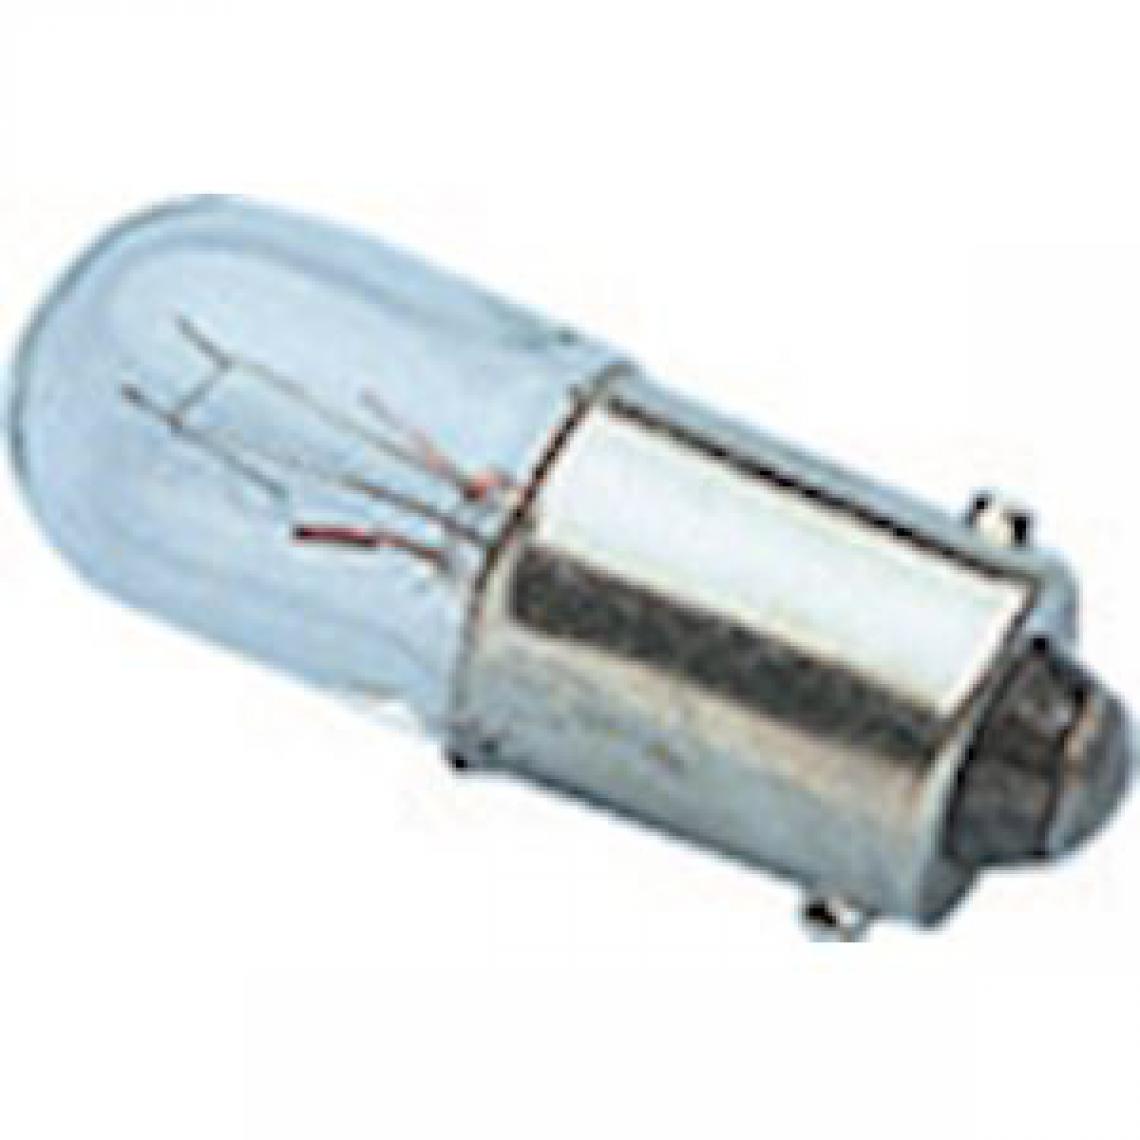 Orbitec - lampe miniature - ba9s - 10 x 28 - 130 volts - 20 ma - 2.6 watts - cc5a - lot de 5 - orbitec 116730 - Ampoules LED